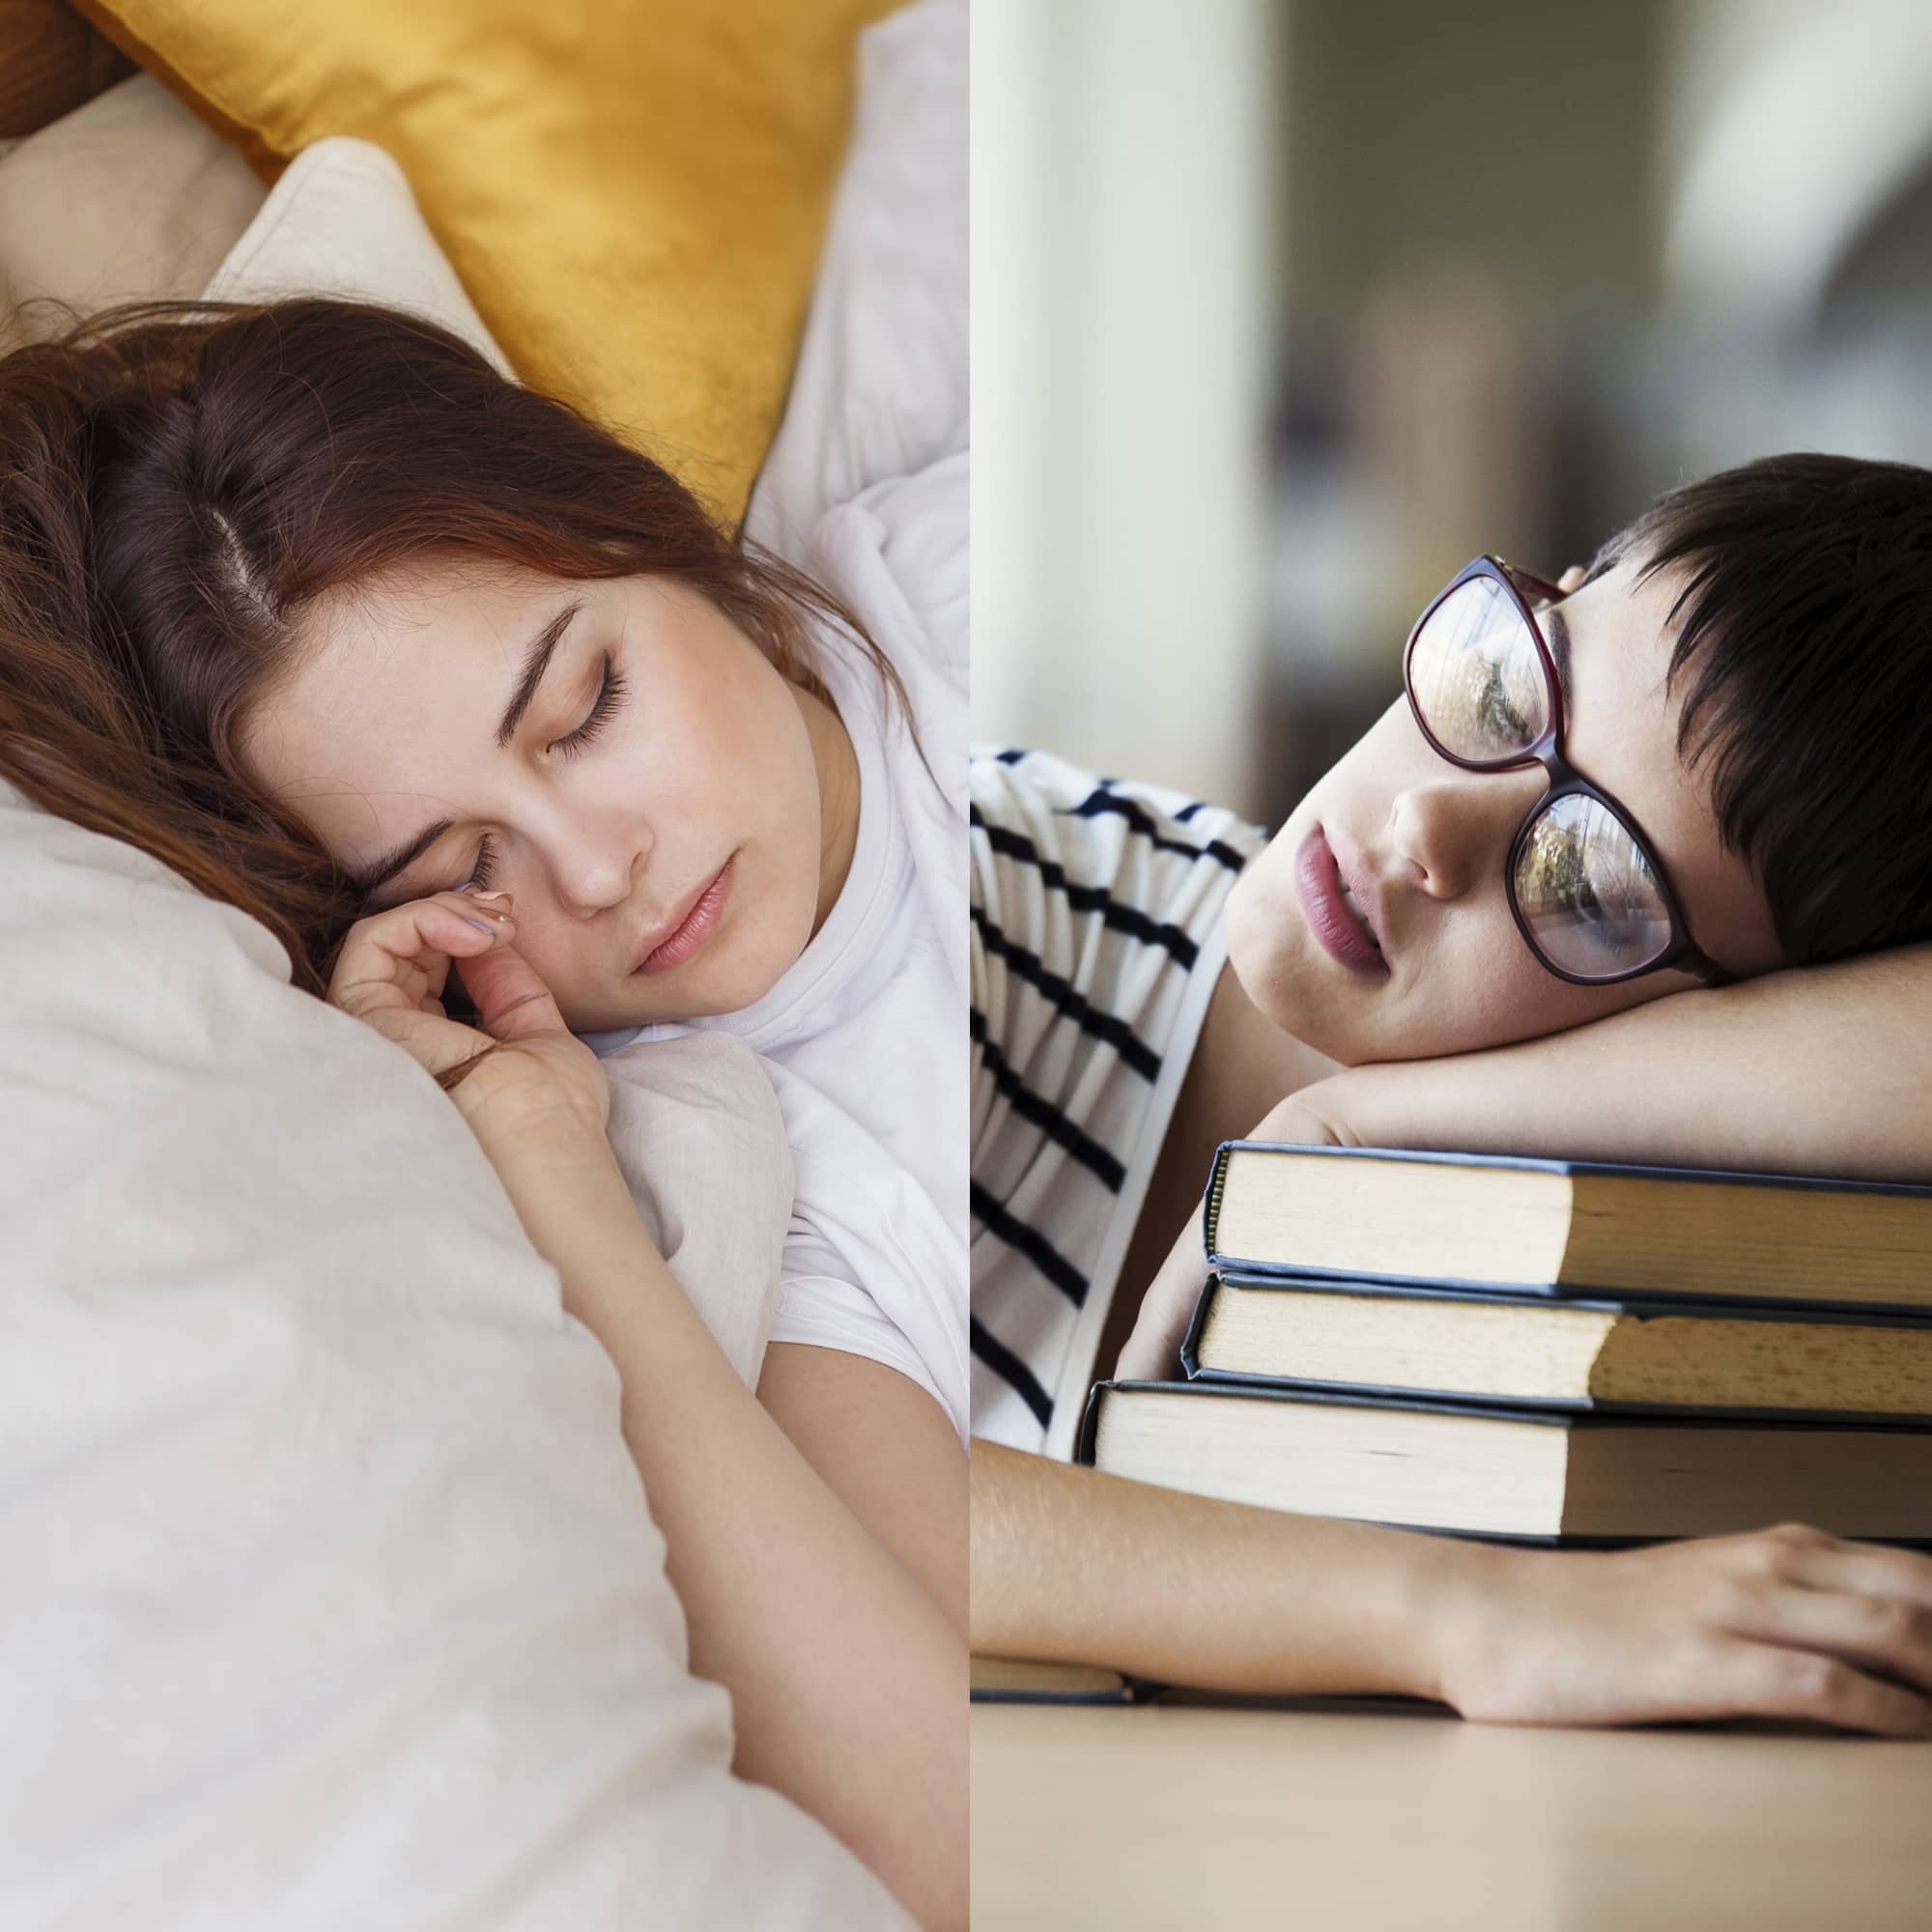 Oversleeping vs. Undersleeping